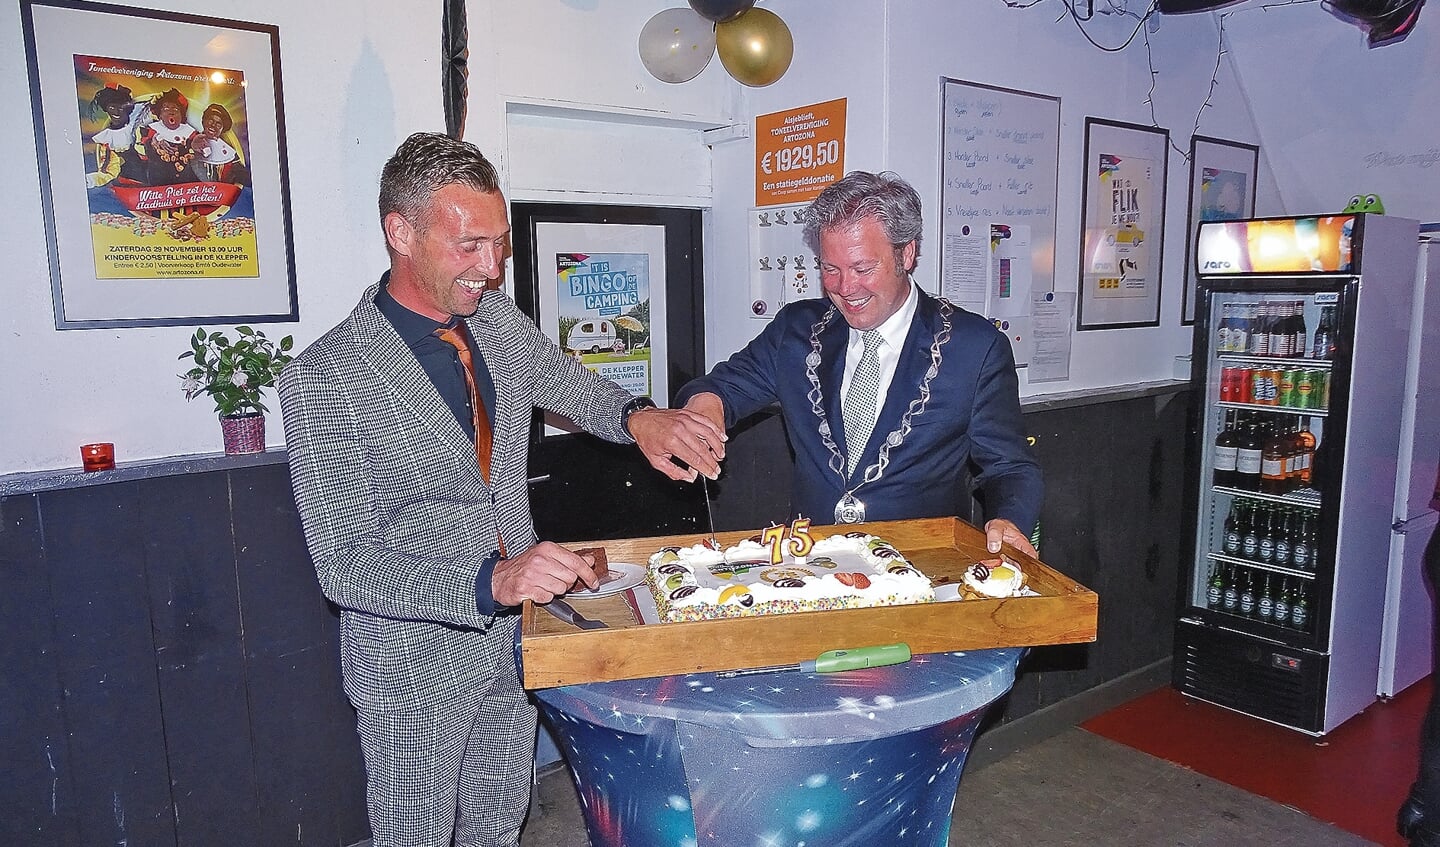 Voorzitter Menno Schoonderwoerd snijdt samen met burgemeester Danny de Vries de taart aan.